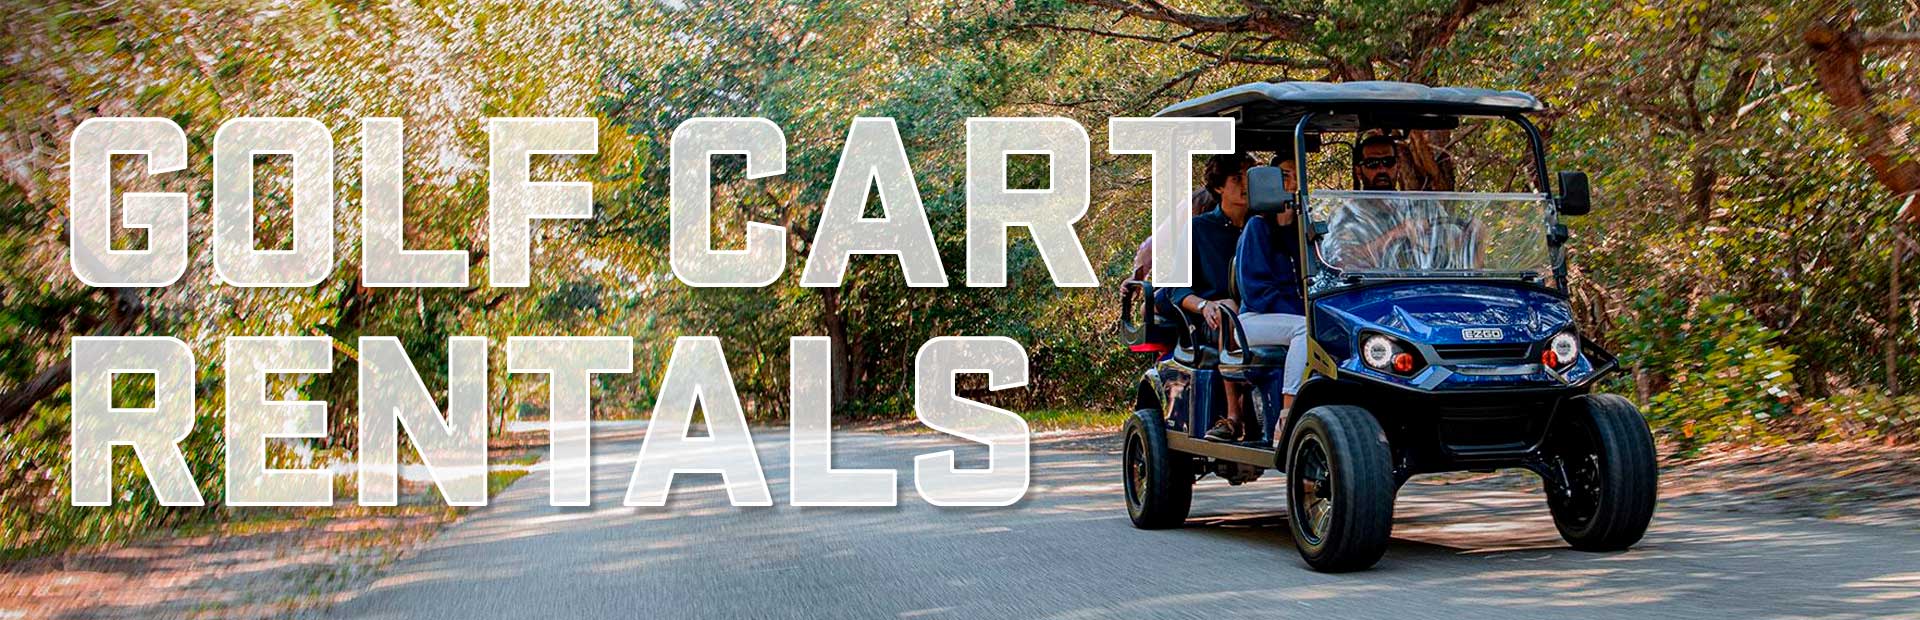 banner-golf-cart-rentals